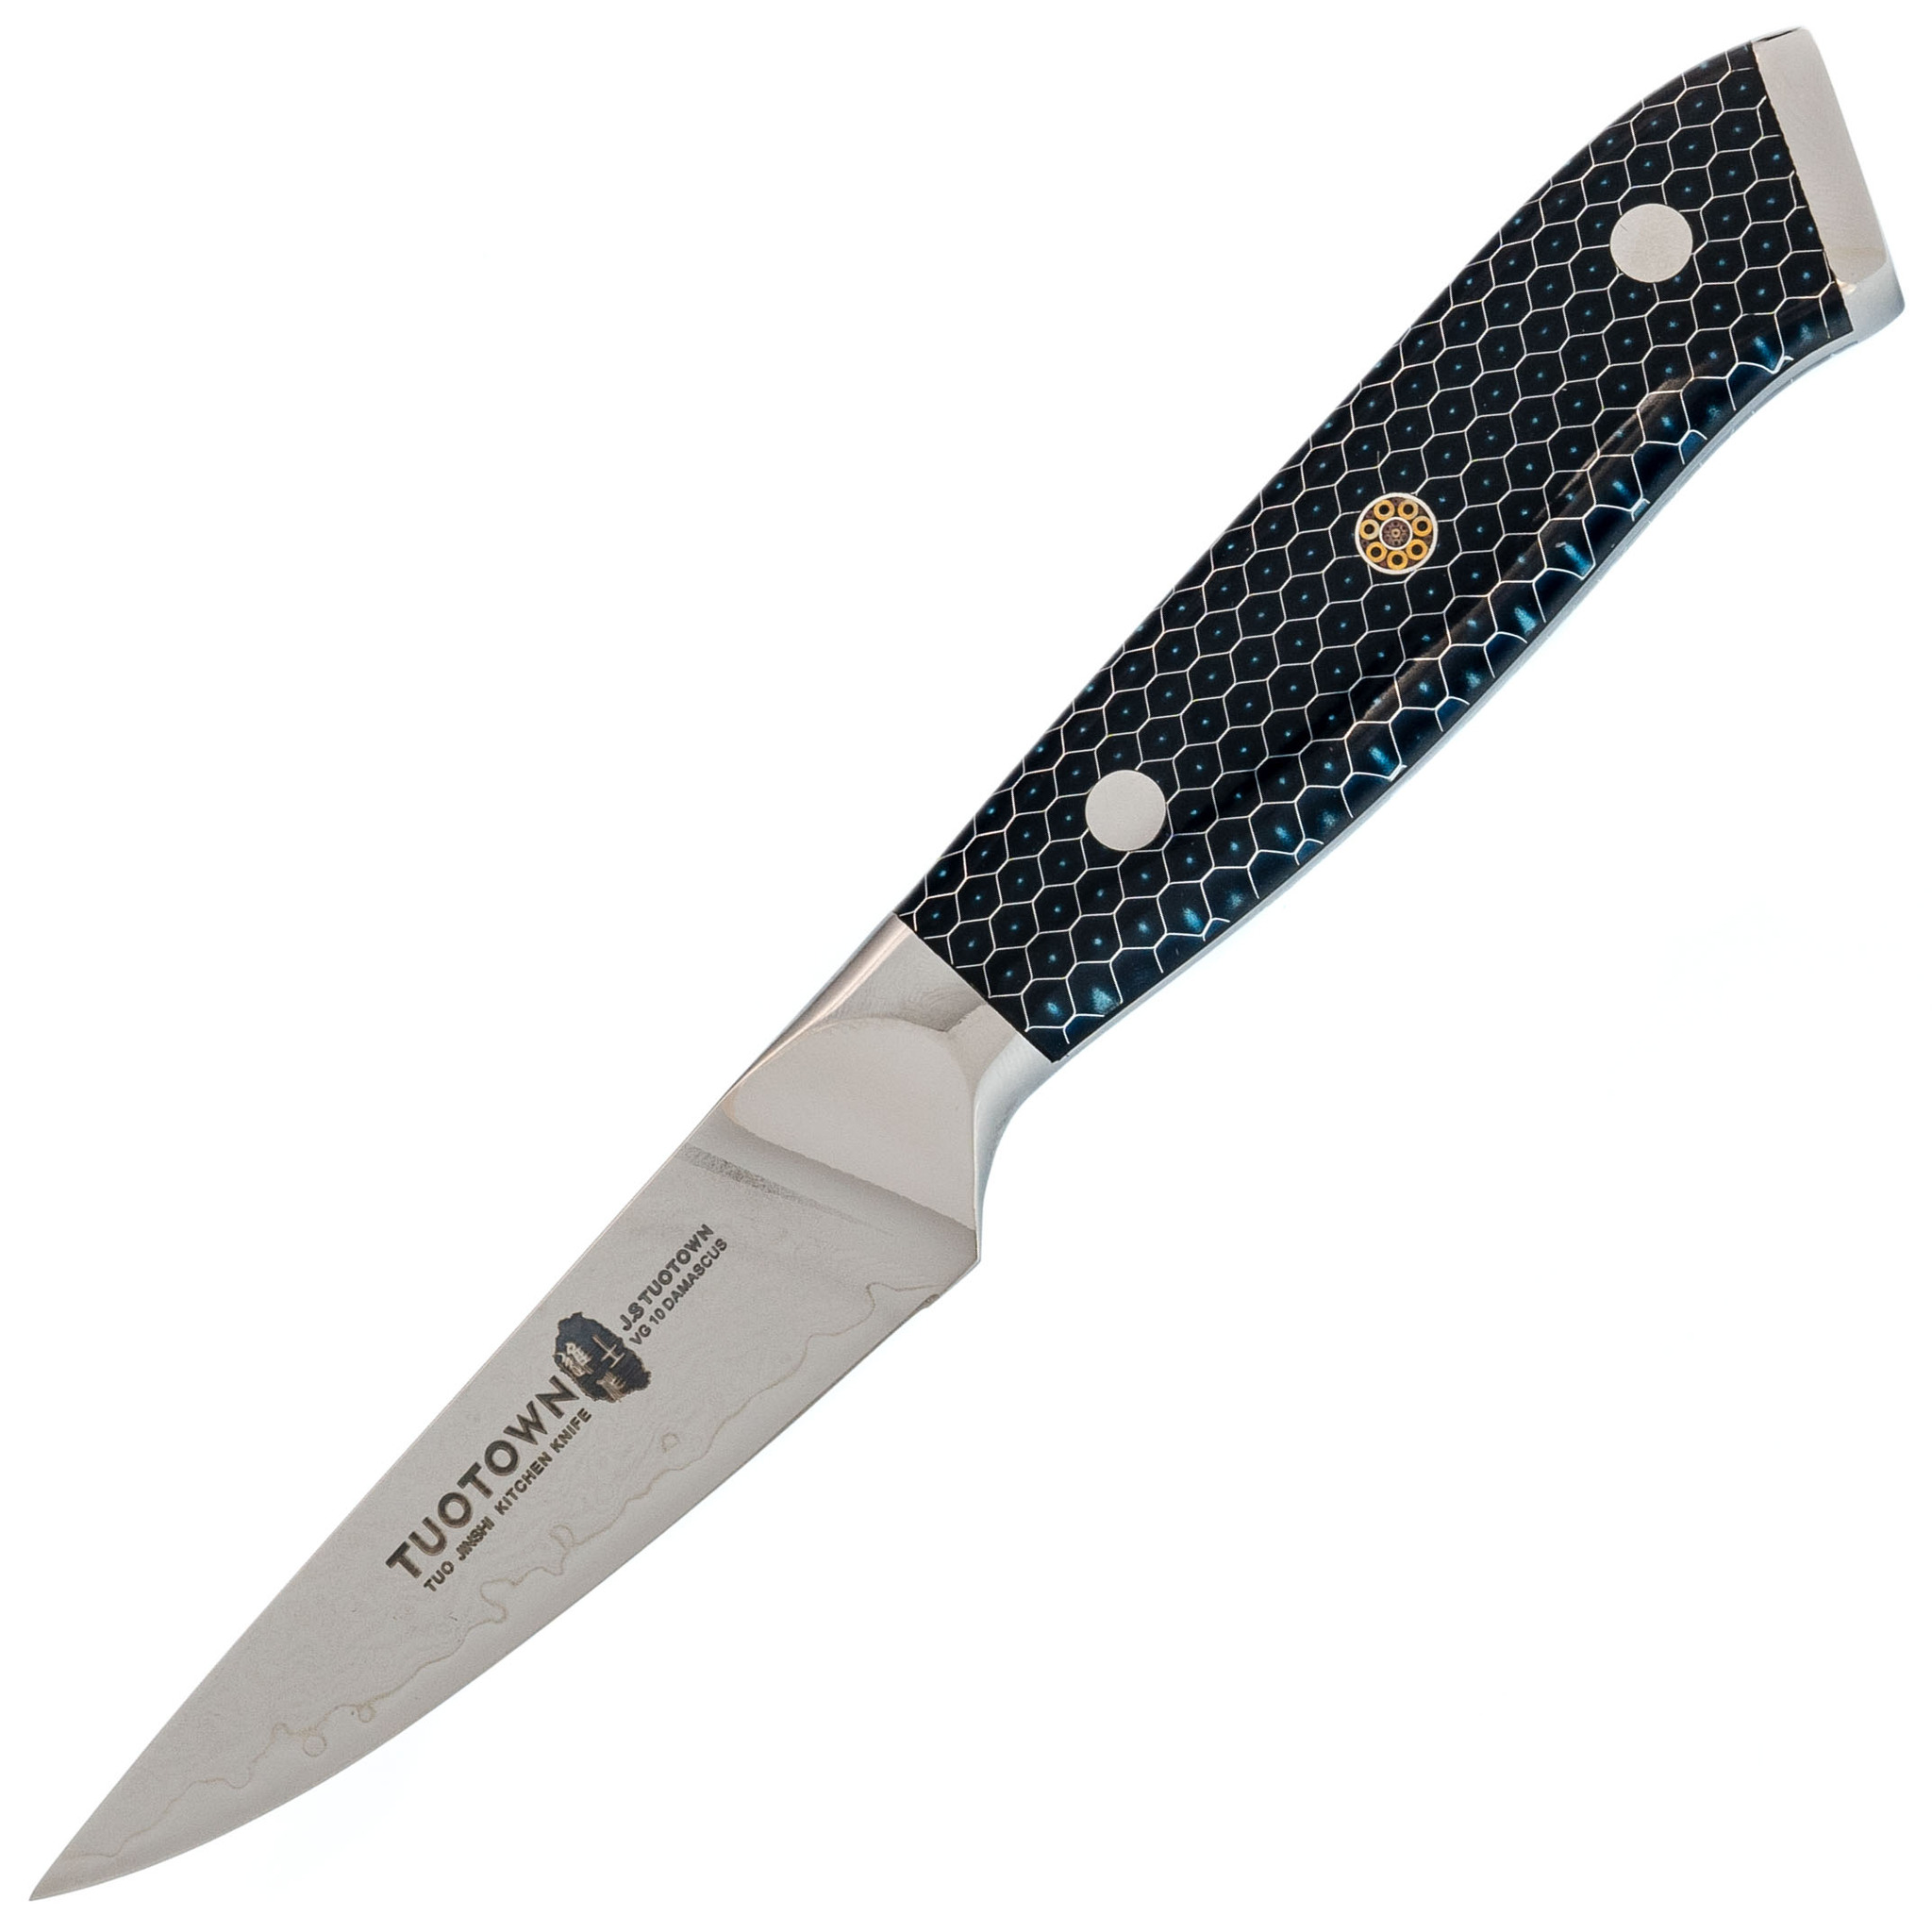 Кухонный нож Tuotown, сталь VG10, обкладка Damascus, рукоять акрил, синий